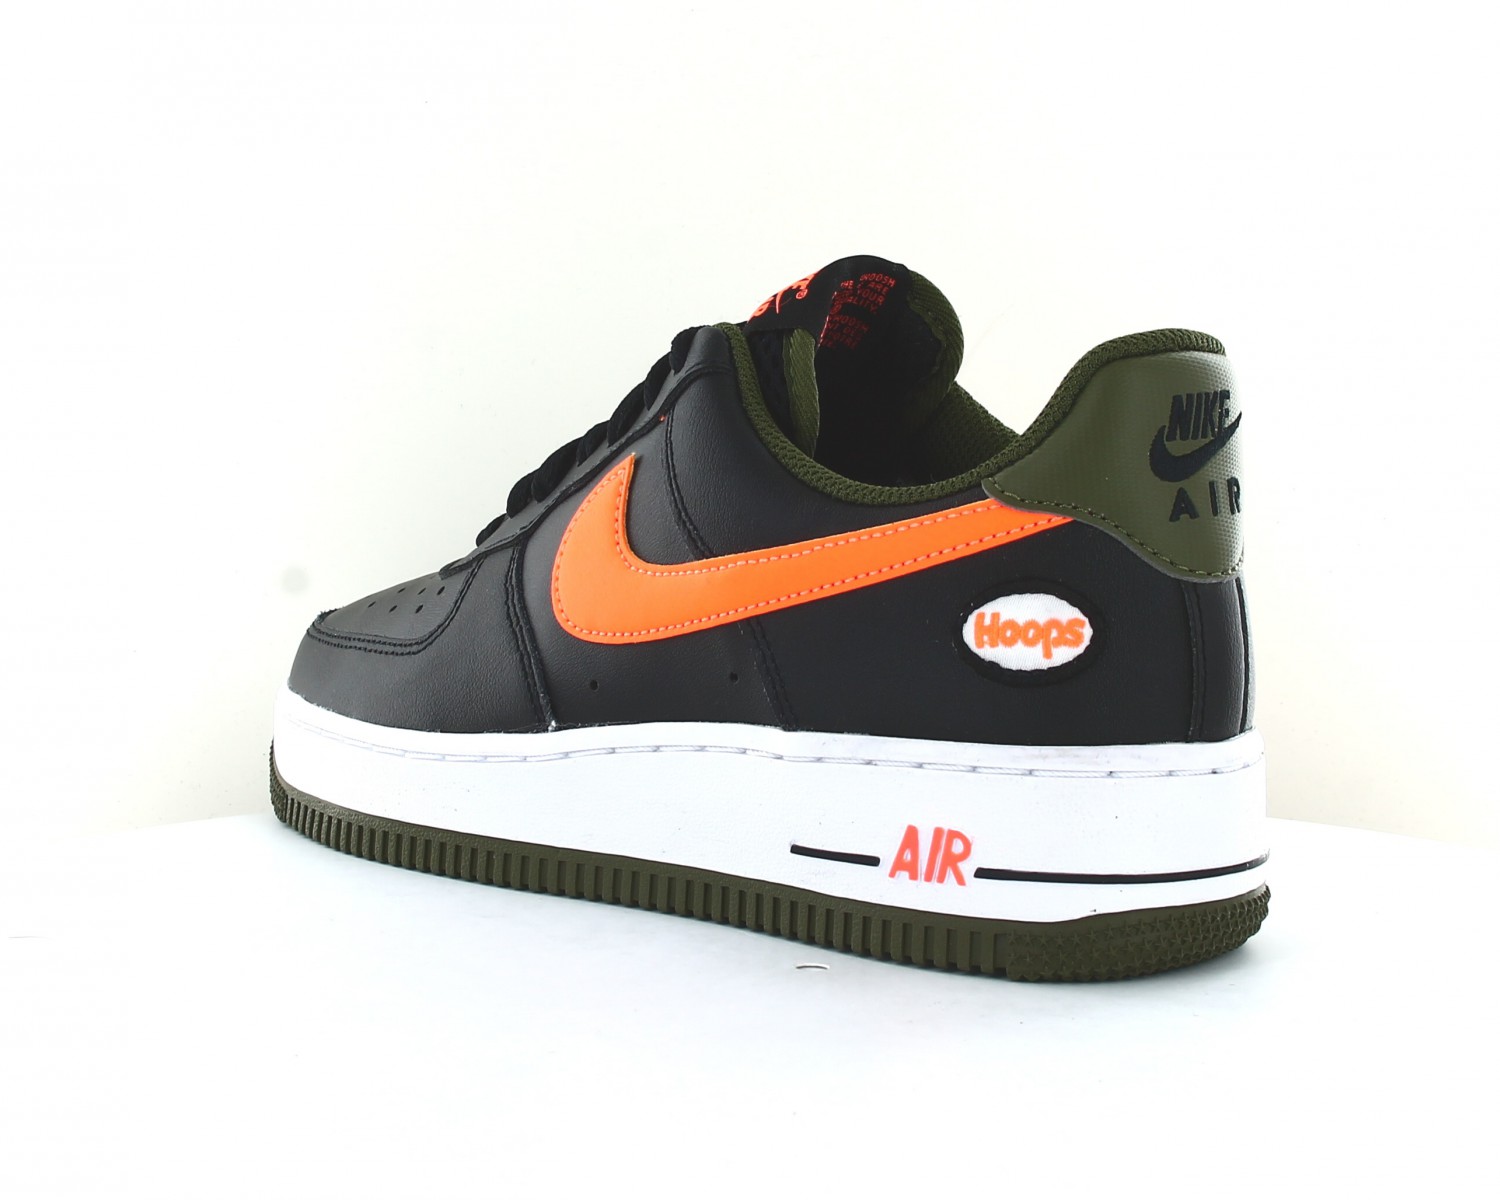 Nike Air force 1 07 lv8 Noir orange kaki